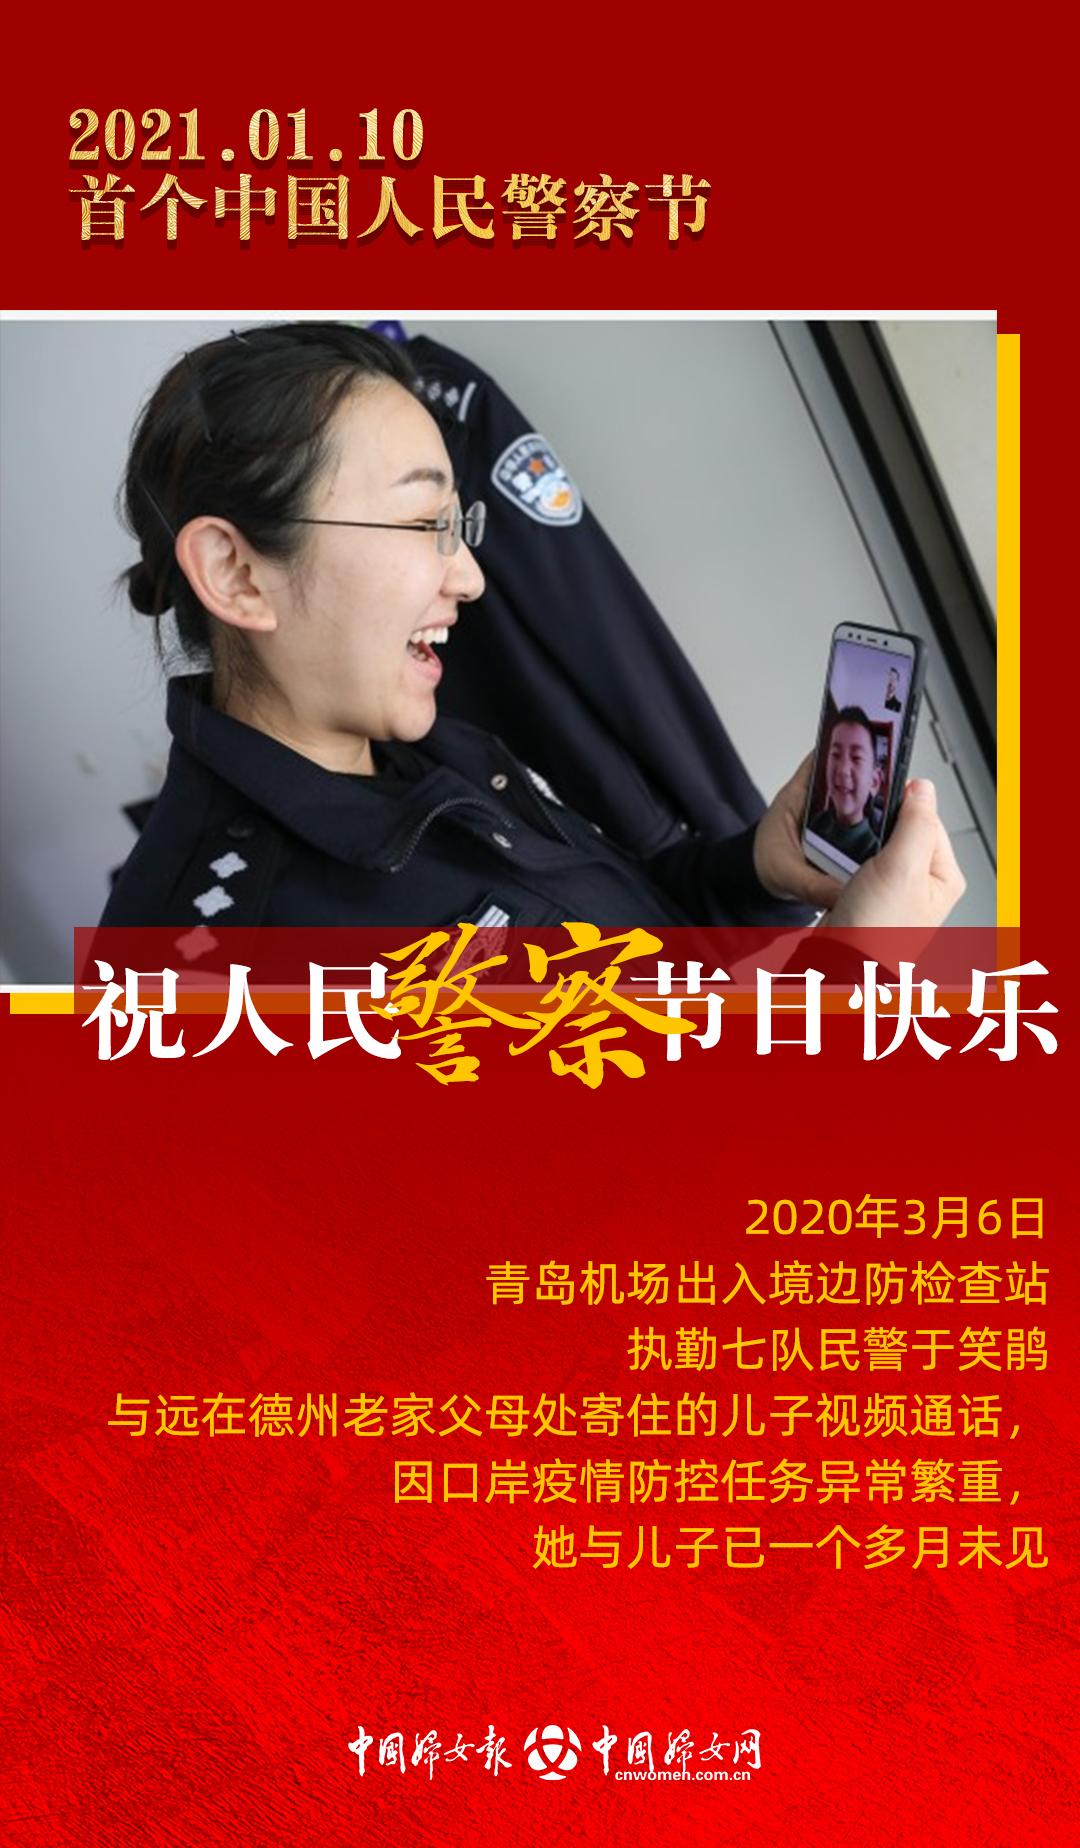 人民警察日祝福语图片